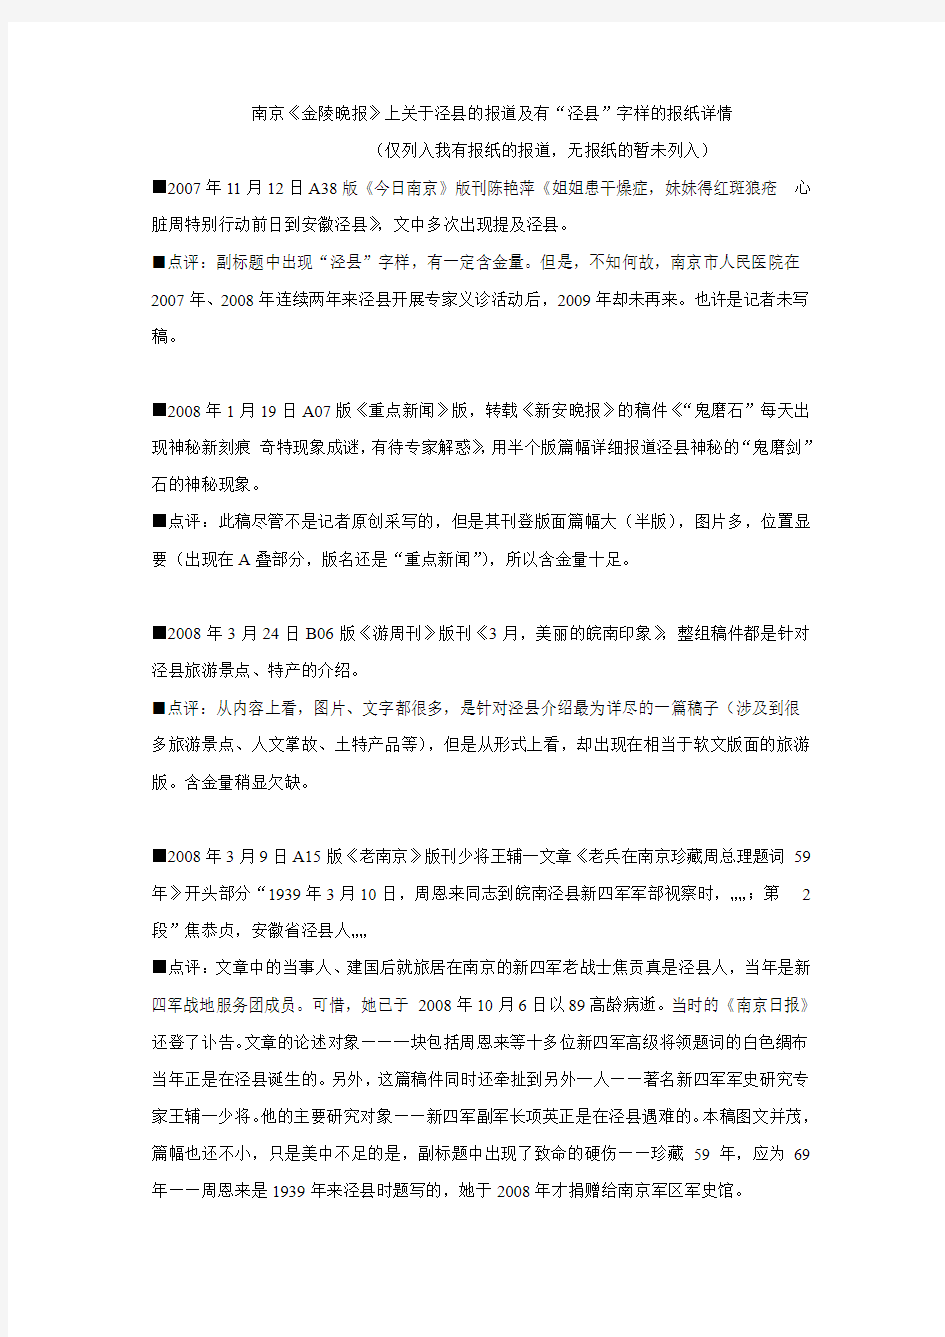 南京《金陵晚报》上关于泾县的报道